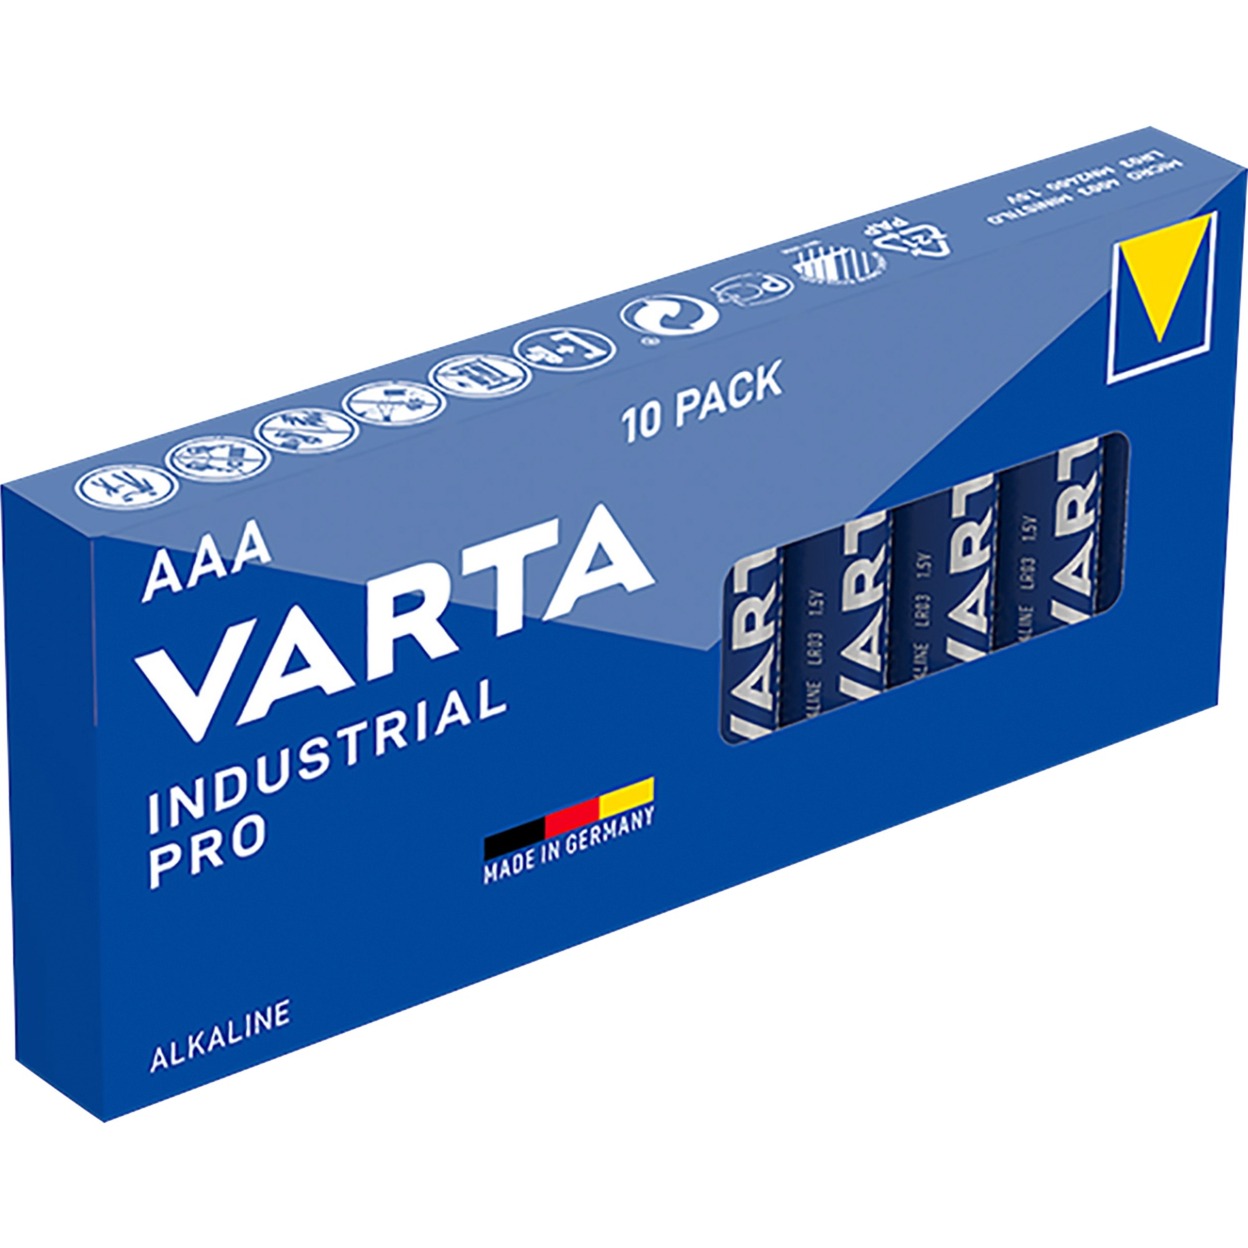 Industrial, Batterie von Varta